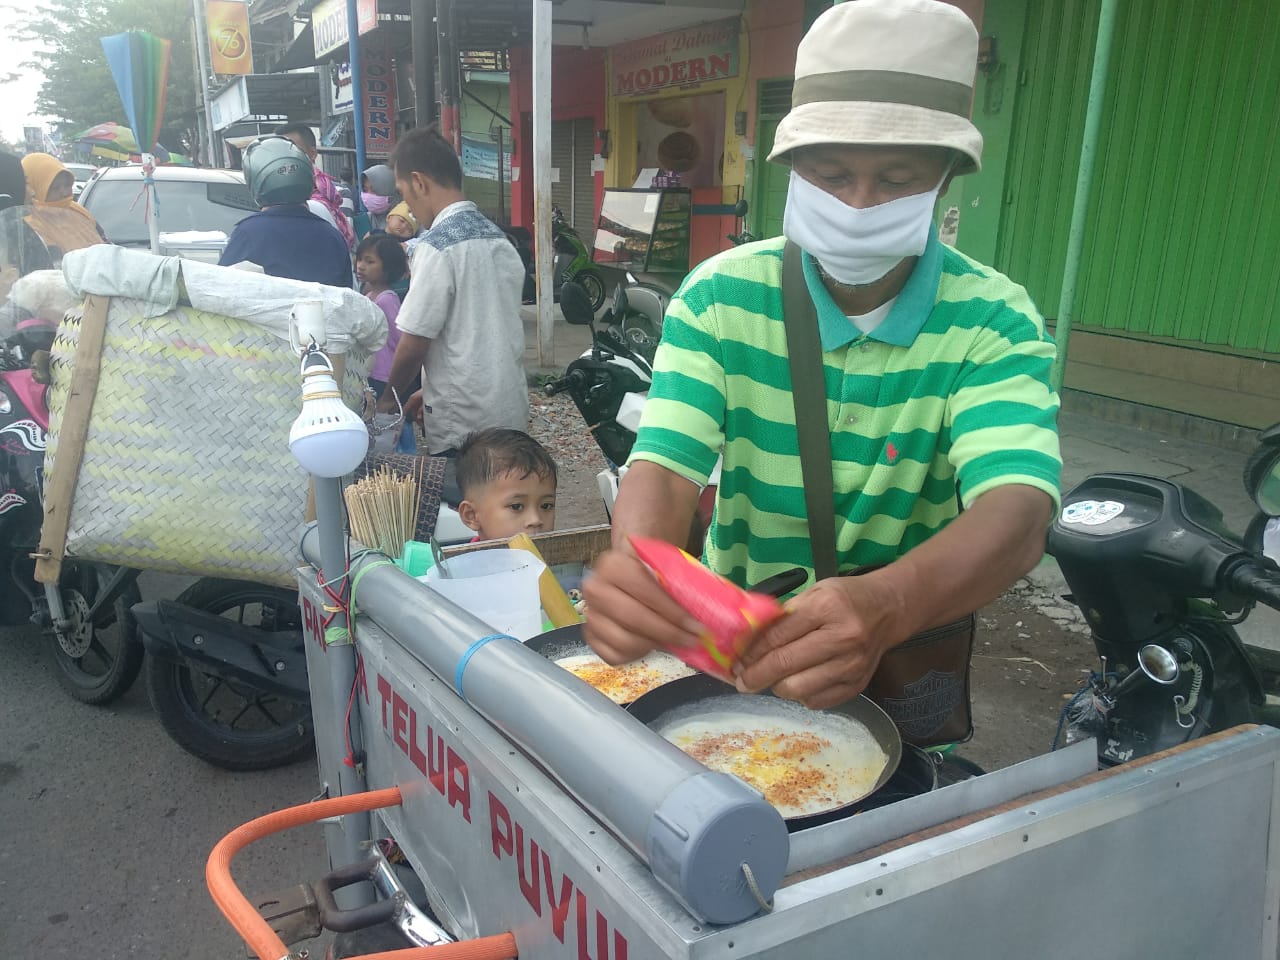 Pedagang jajanan anak Papeda Telur, Sugiman, memakai masker sesuai protokol kesehatan saat pandemi corona kawasan Pasar Cukir, Jombang, Jawa Timur. (Foto: M. Rizqi/Ngopibareng.id)